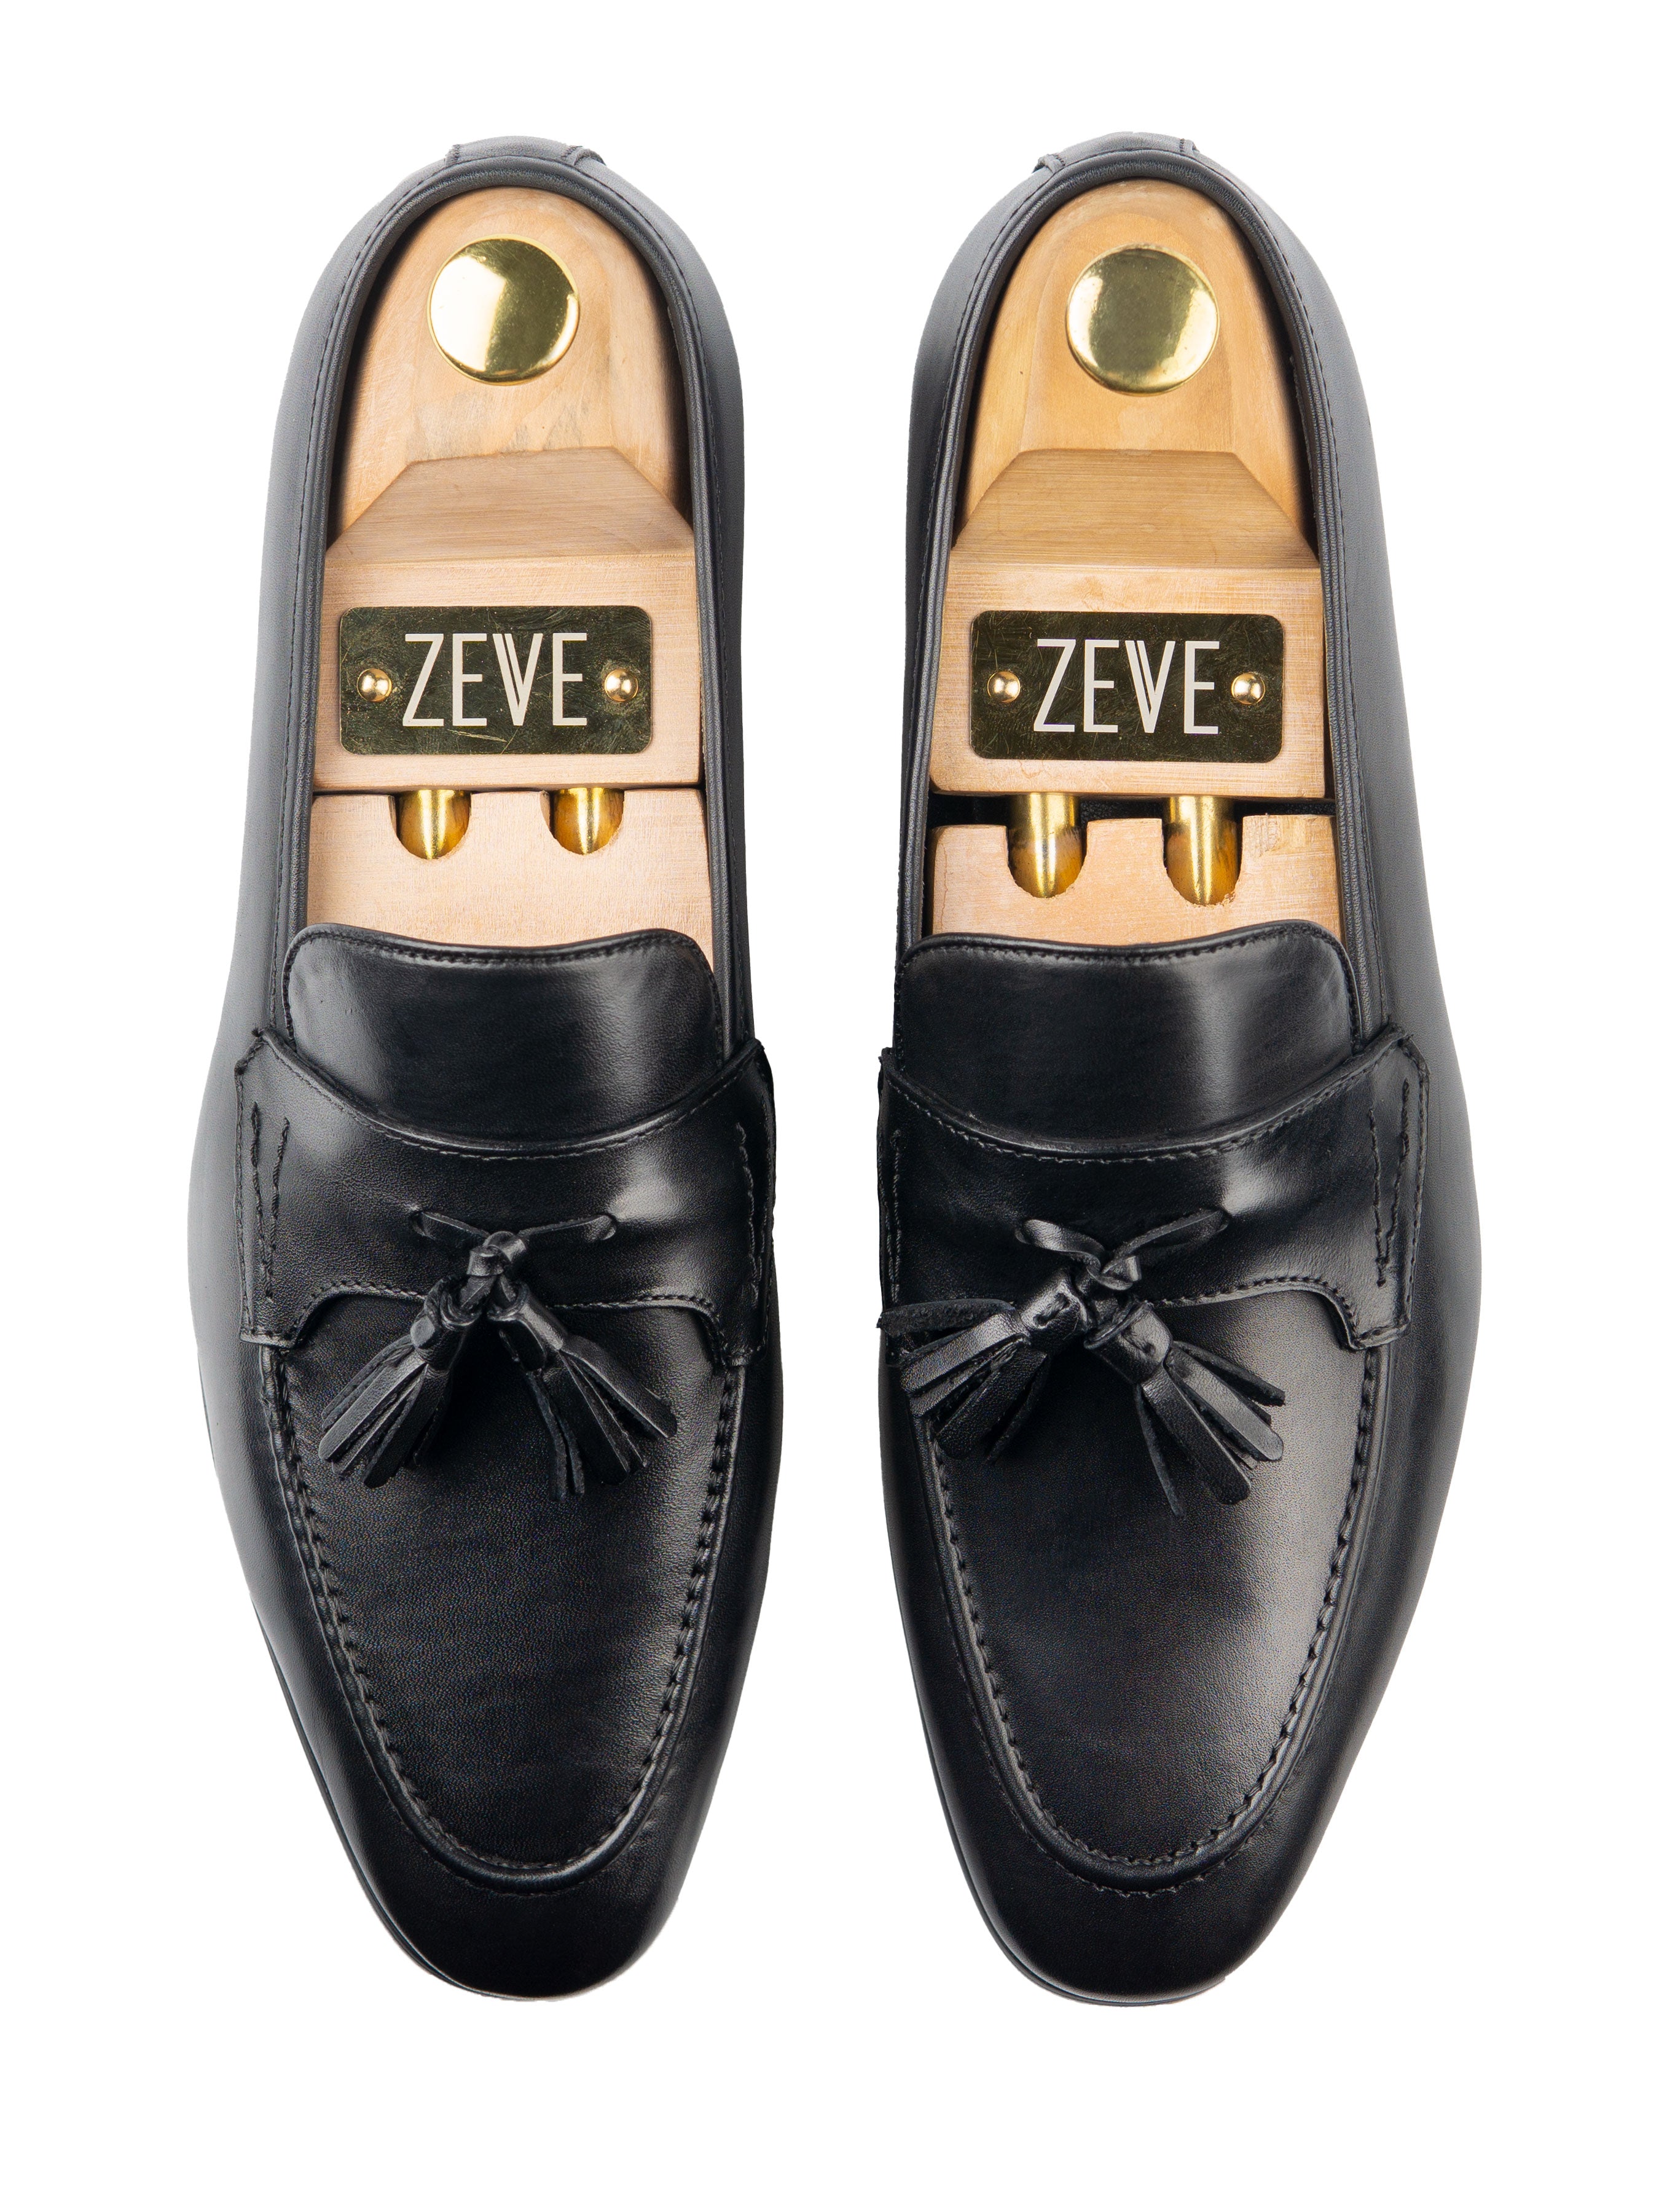 Tassel Loafer Wing Strap - Solid Black - Zeve Shoes